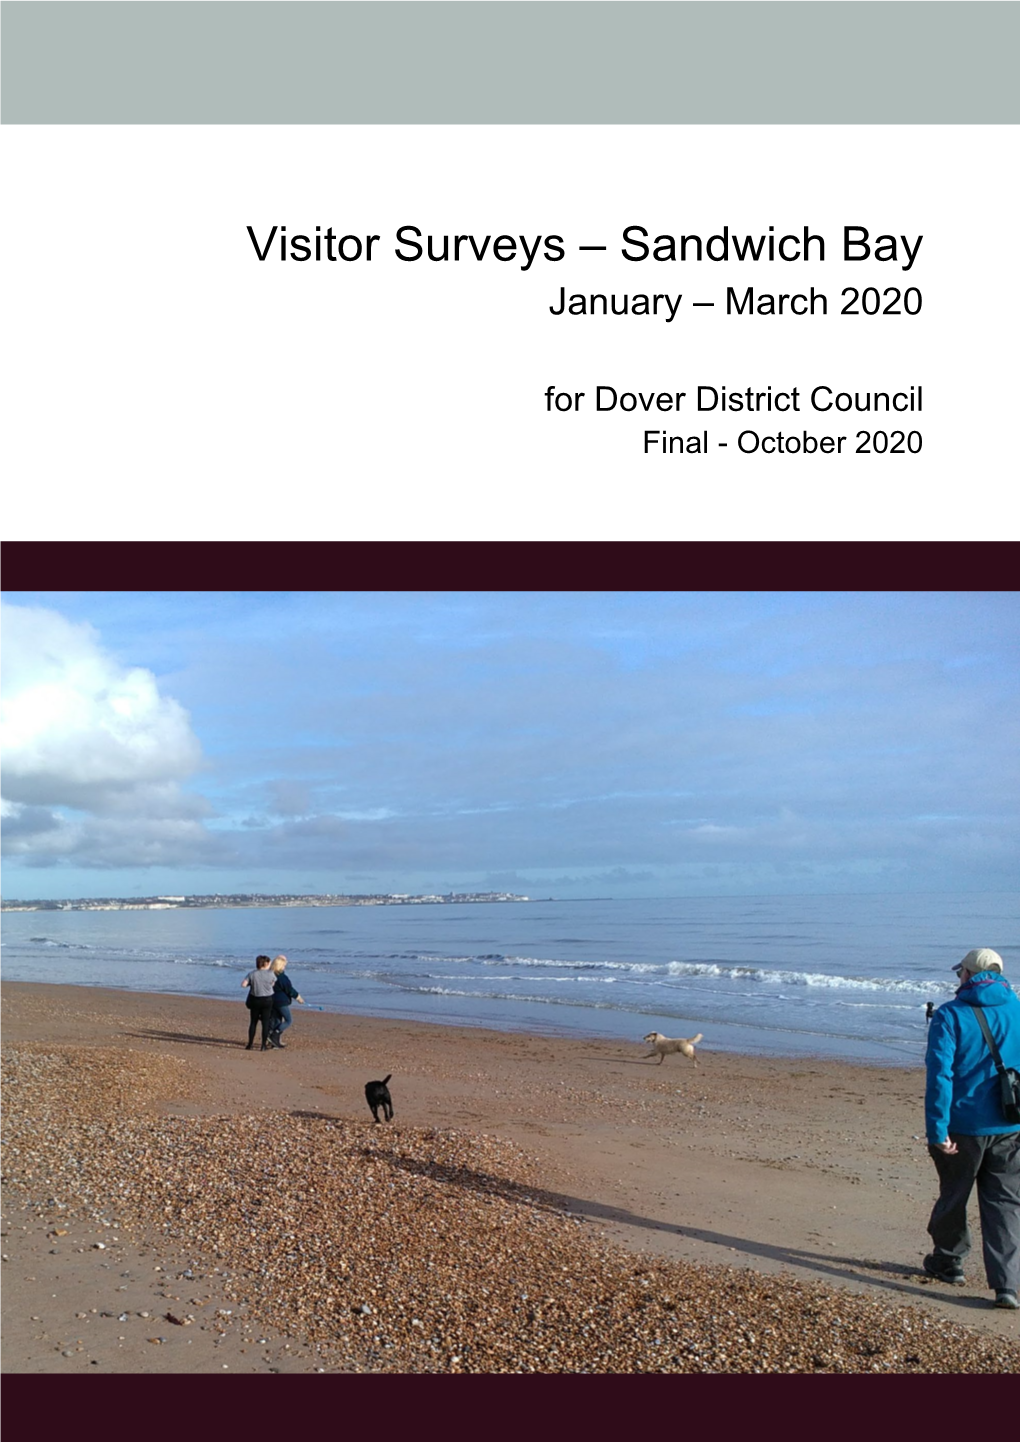 Sandwich Bay Visitor Surveys January-March 2020